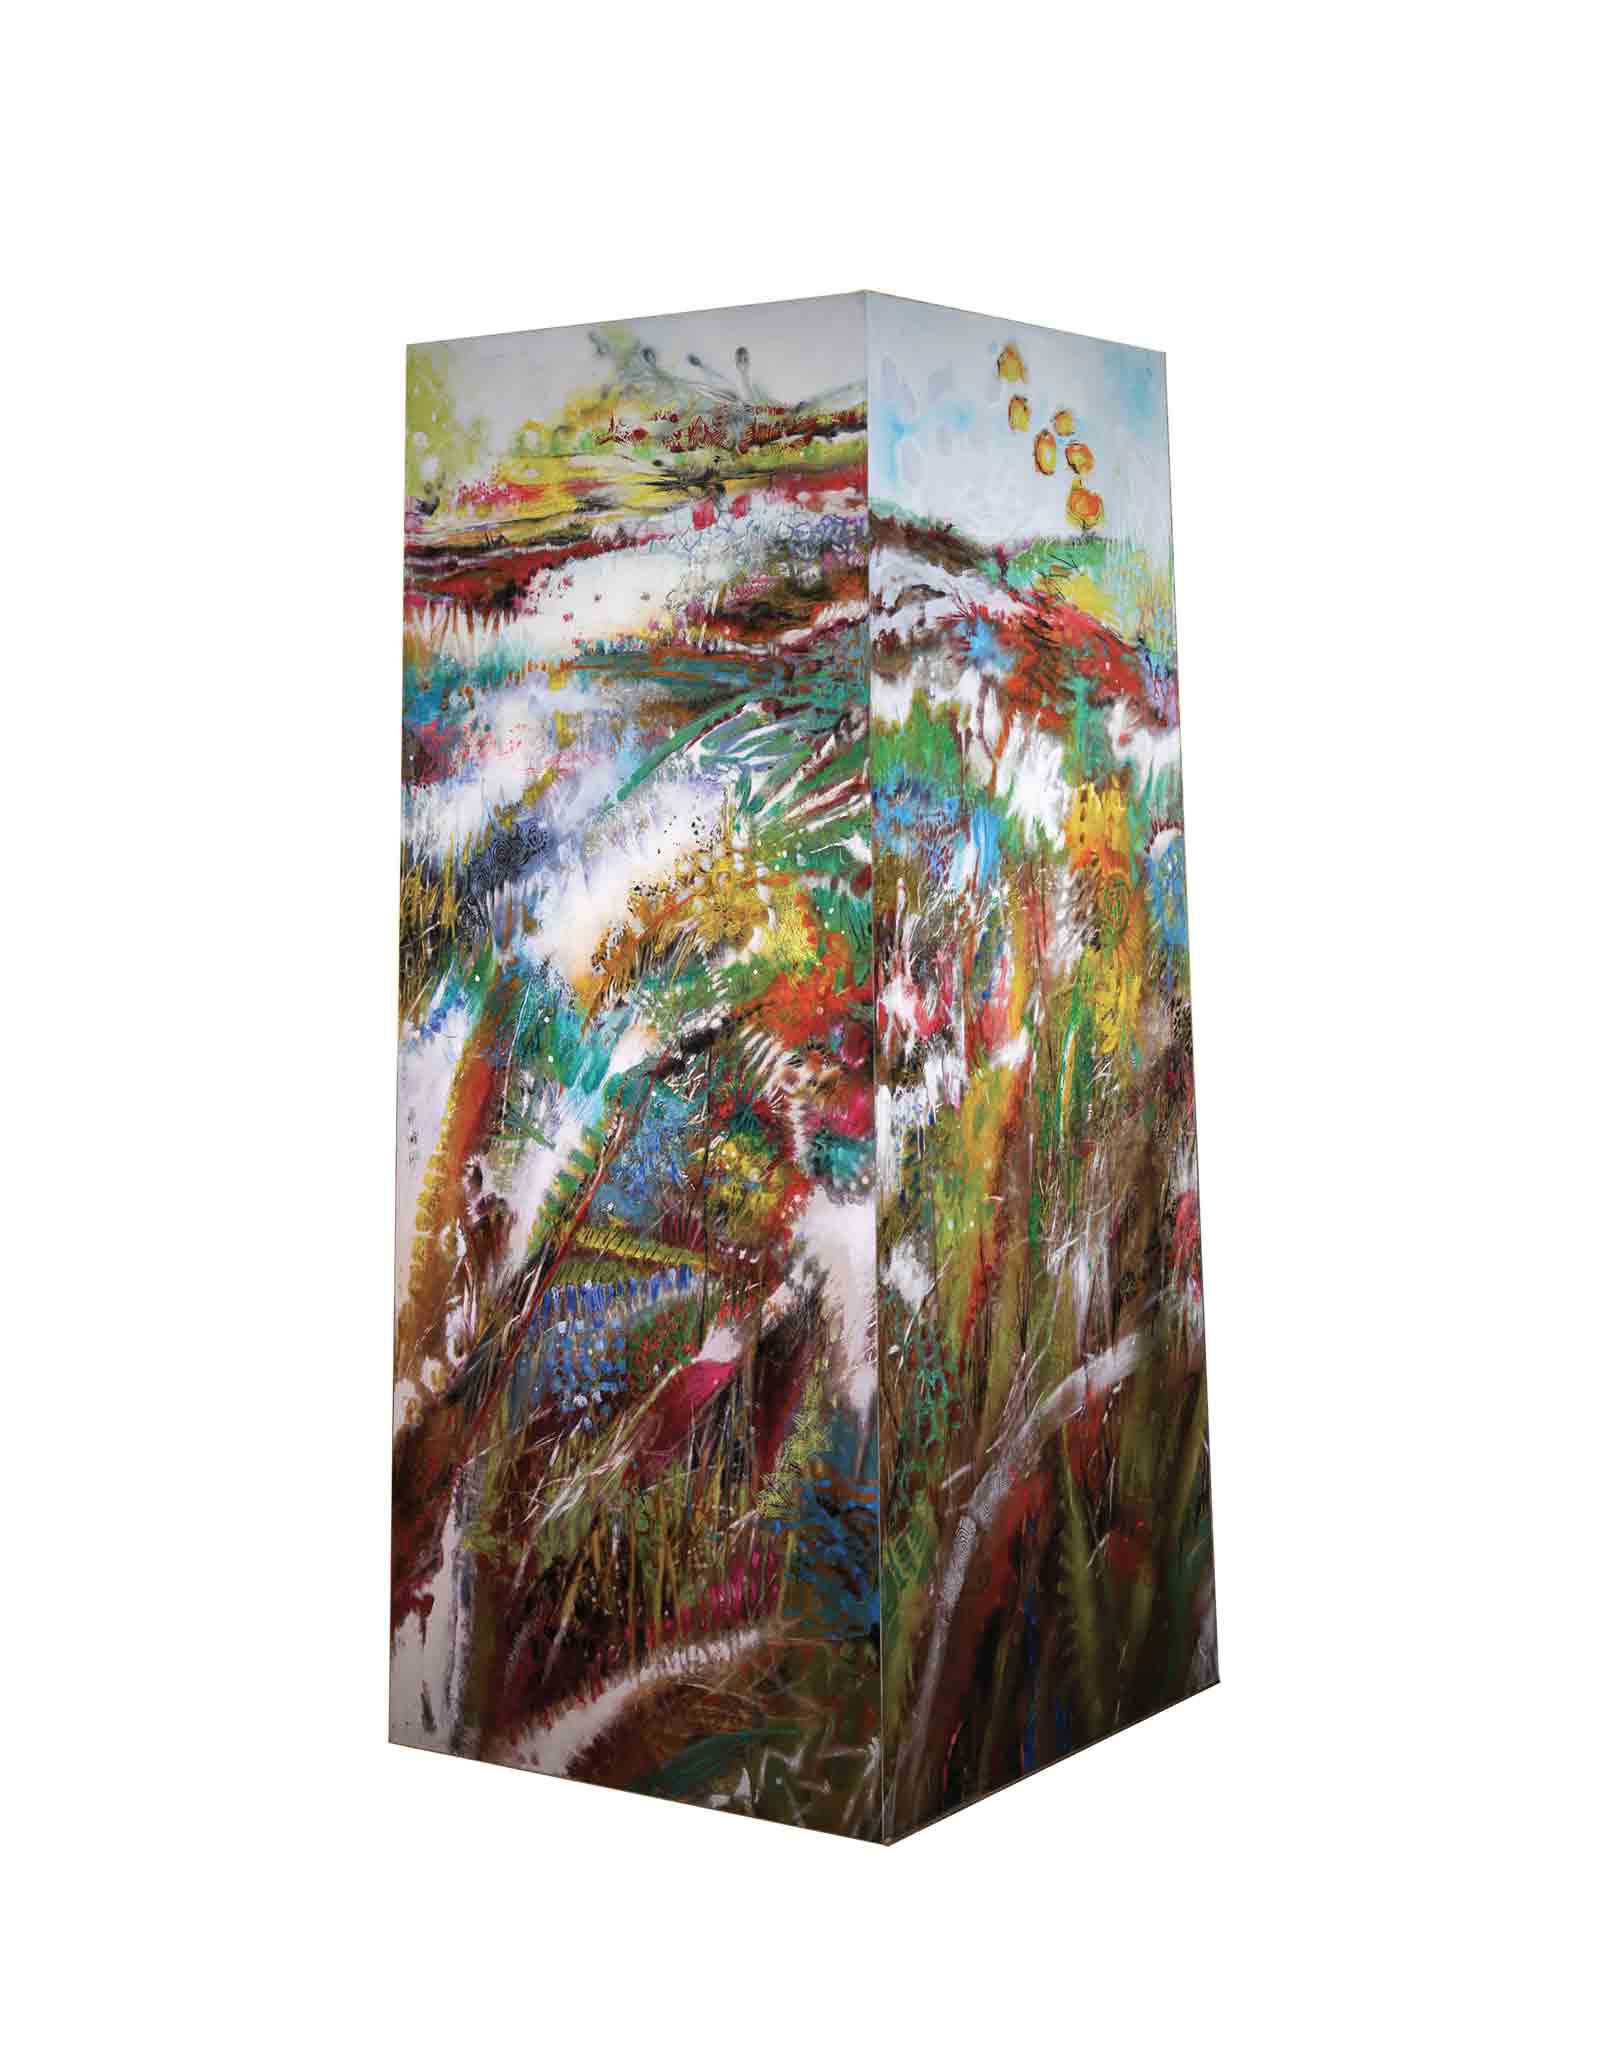 « Esprit nature », installation de 4 panneaux de 250 (h) x 90 (l) cm en parallélépipède rectangle de base carrée, acrylique sur textile.